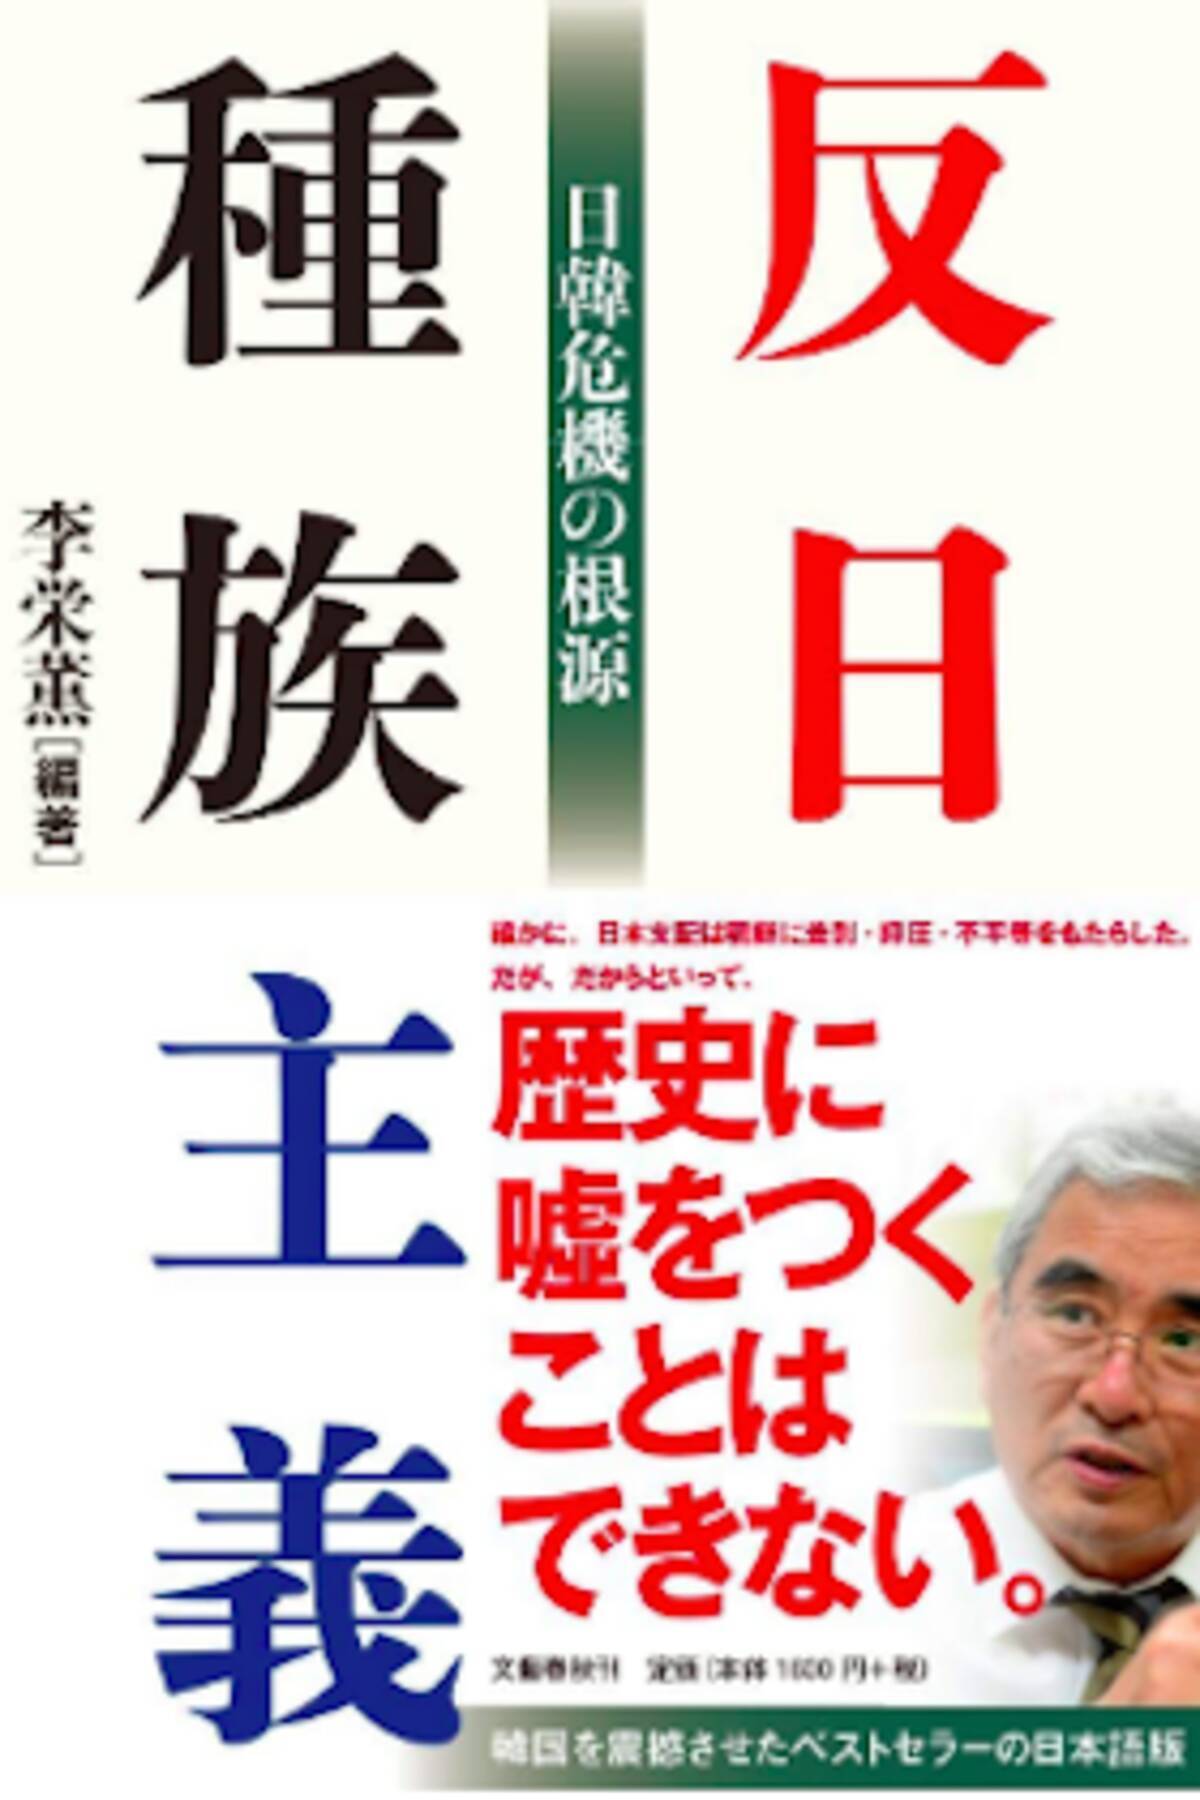 韓国ベストセラー 反日種族主義 は日本のネトウヨ本そっくりの歴史修正とフェイクだらけ 背後に日本の極右人脈が 19年11月18日 エキサイトニュース